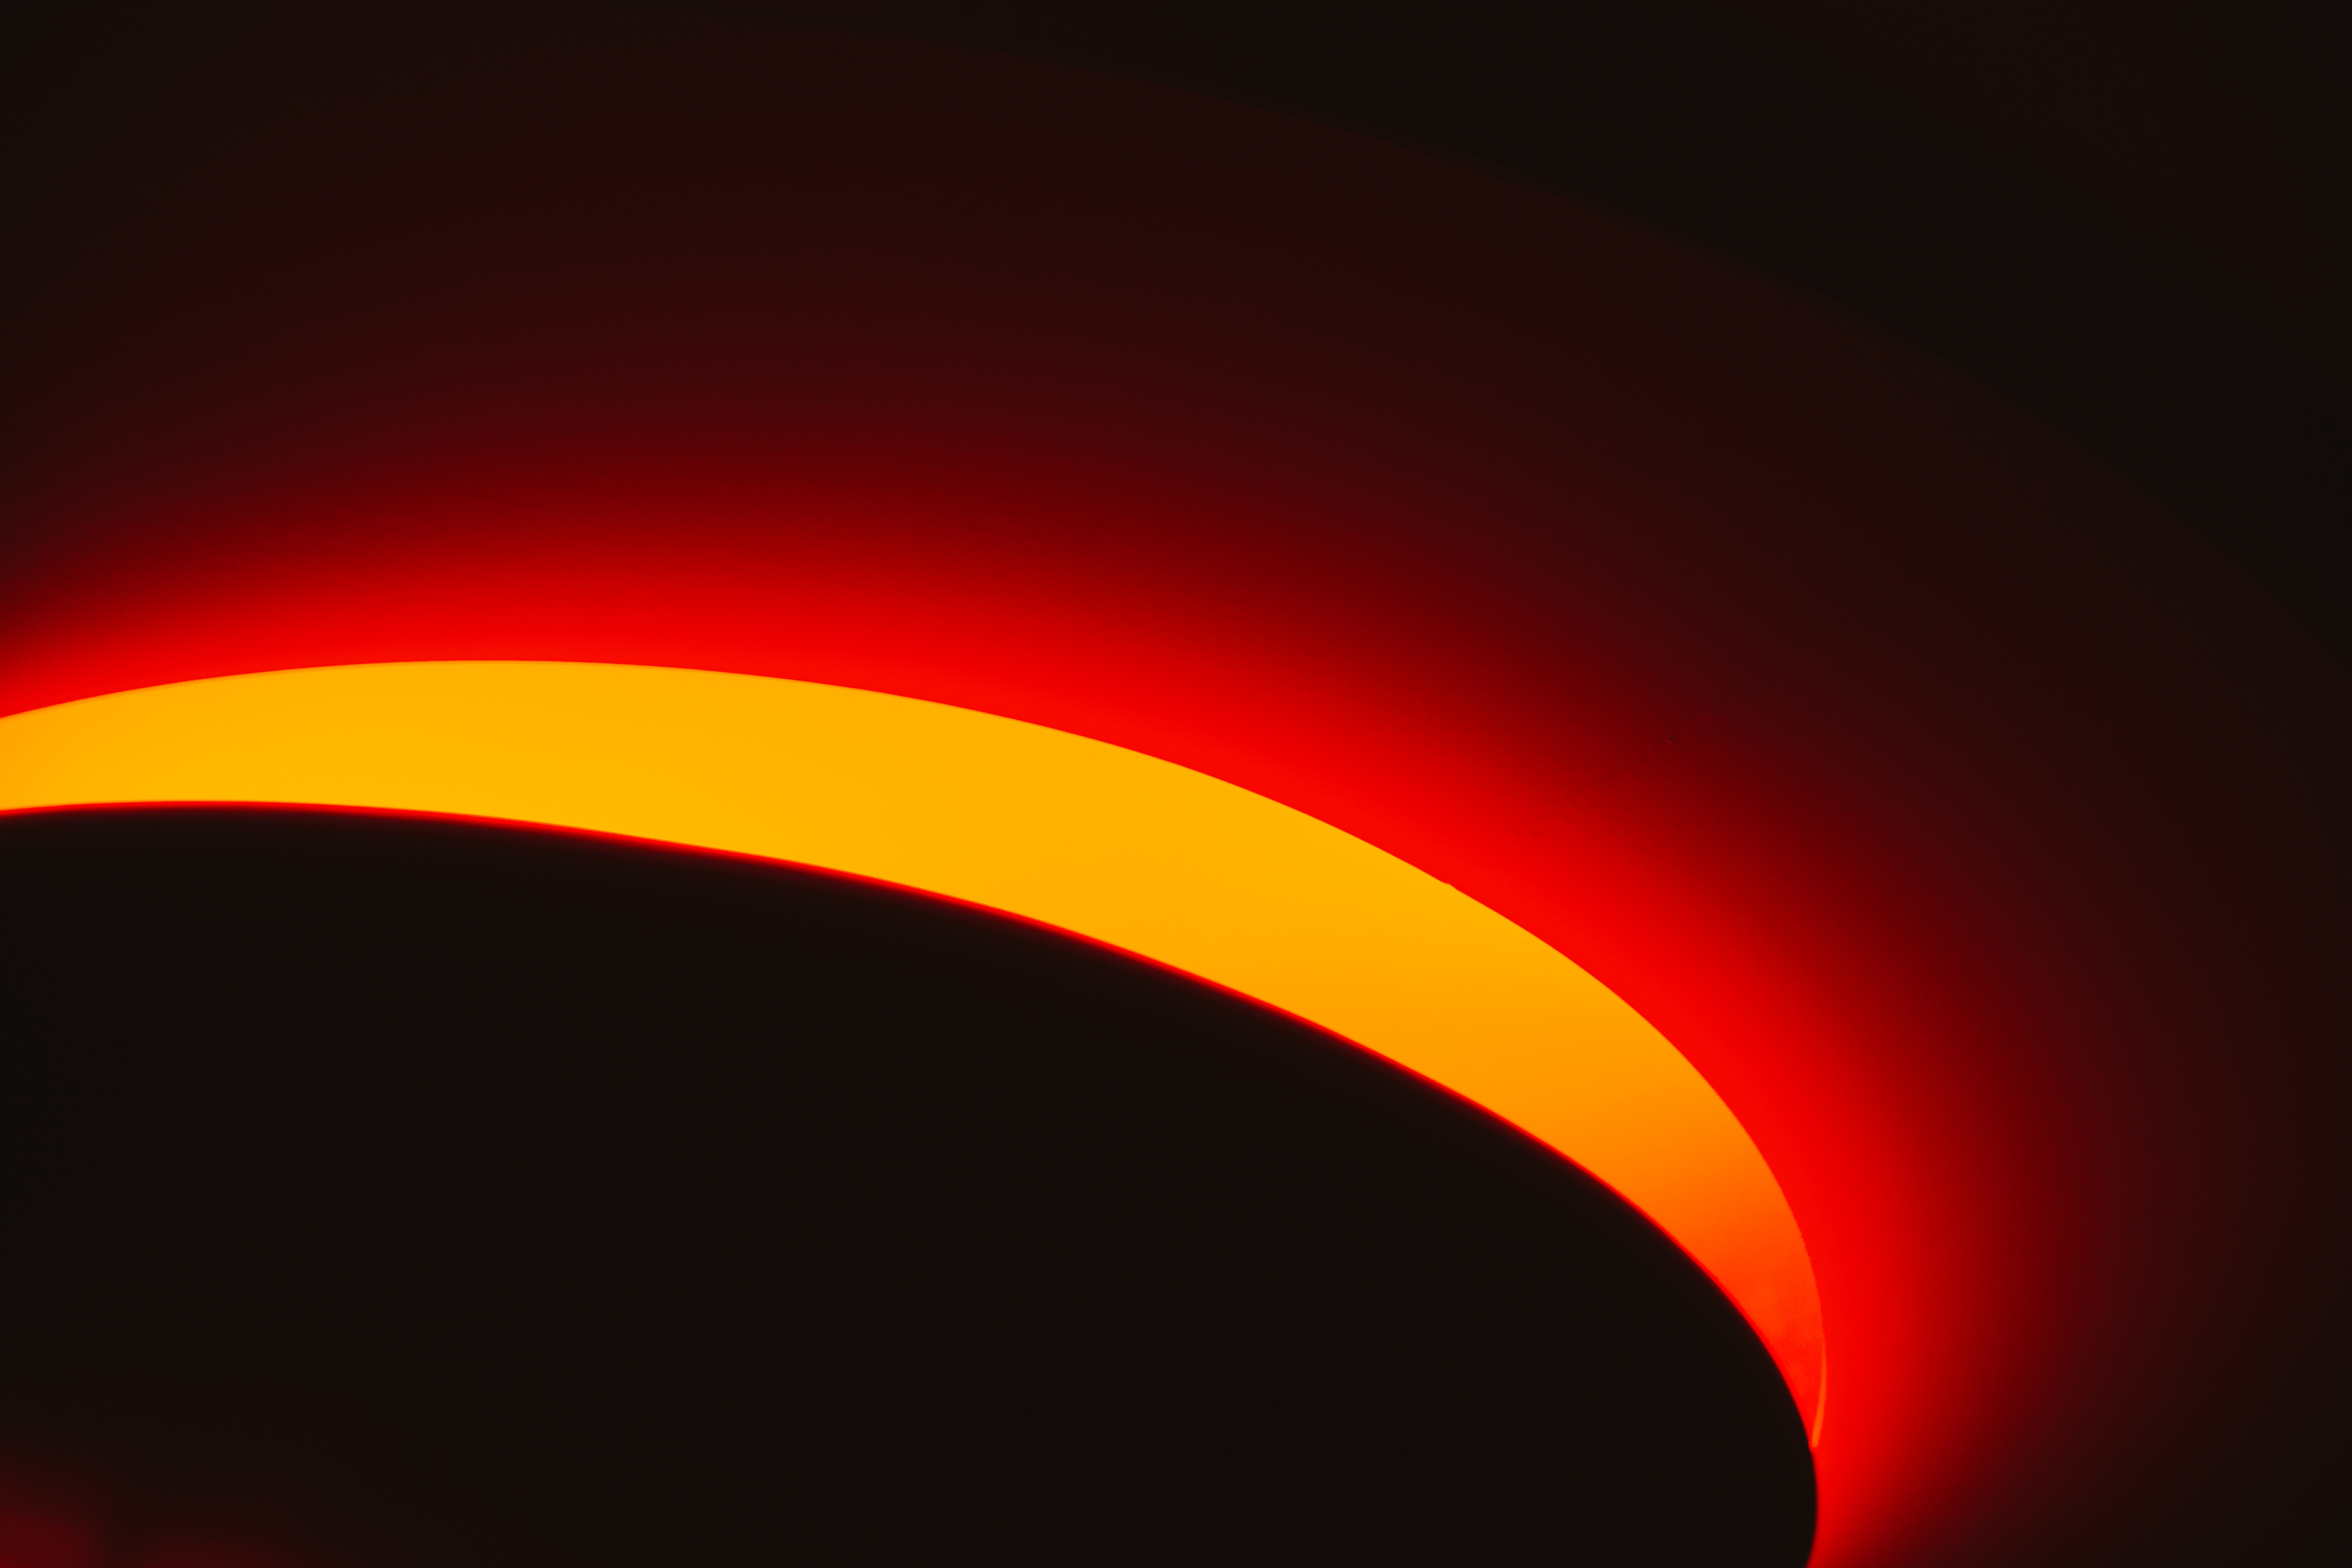 abstracte afbeelding waarin een zwarte cirkel omgeven wordt door een gele en rode gloed